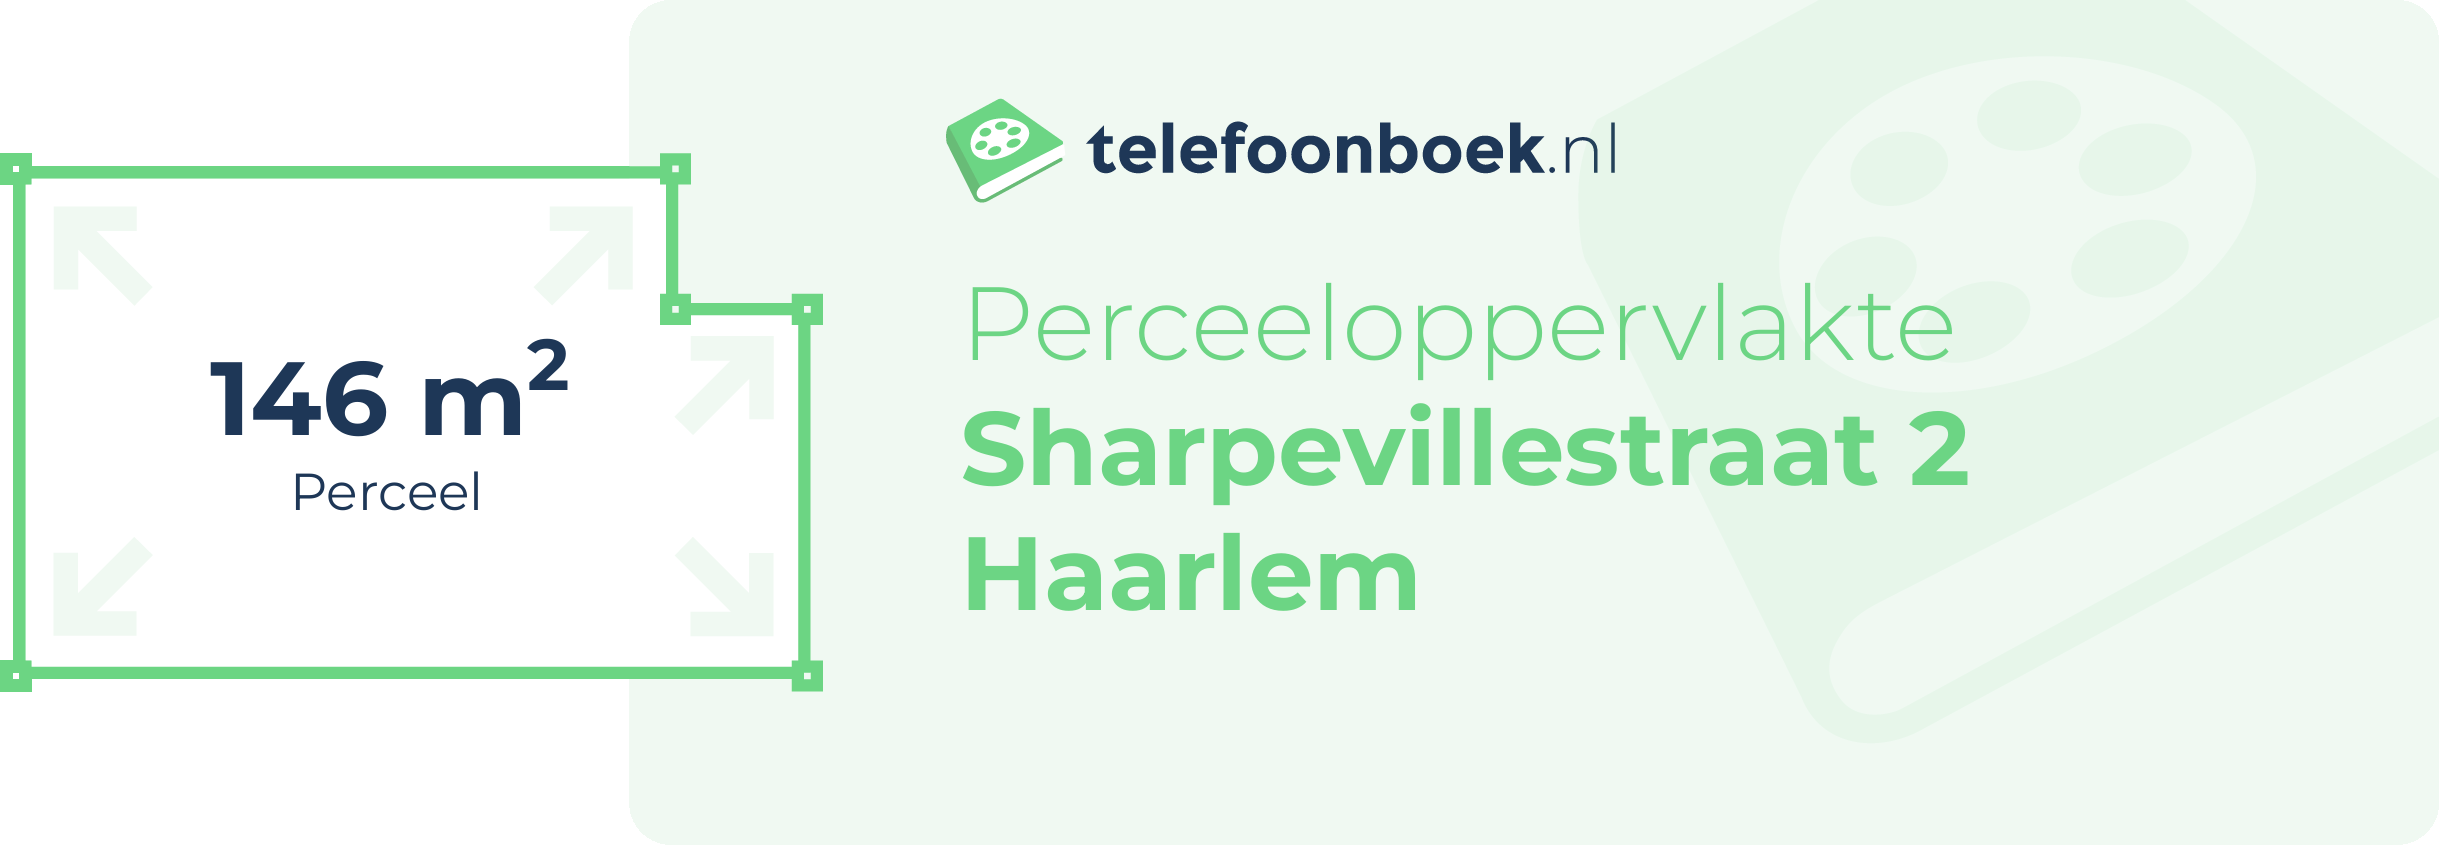 Perceeloppervlakte Sharpevillestraat 2 Haarlem